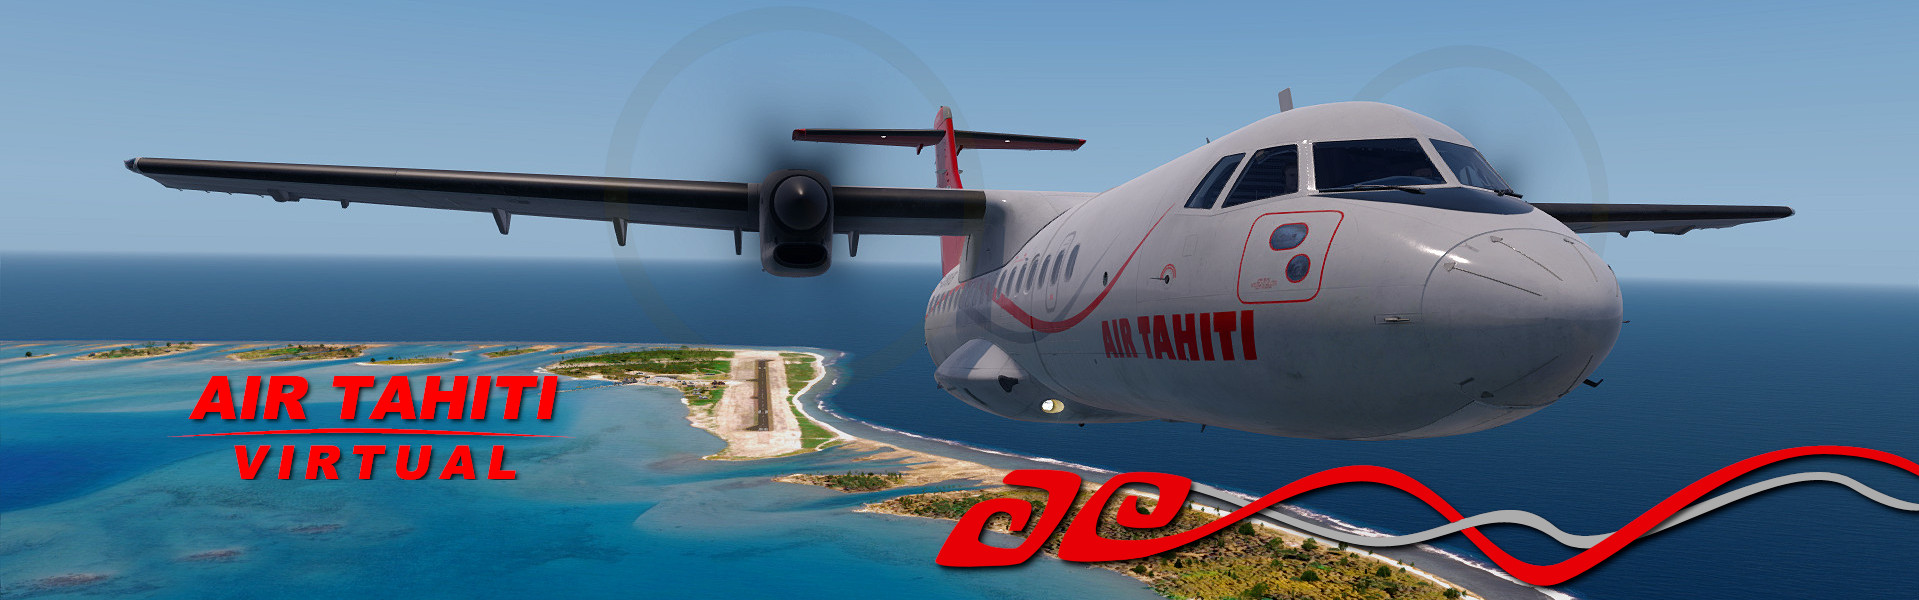 Air Tahiti Virtual